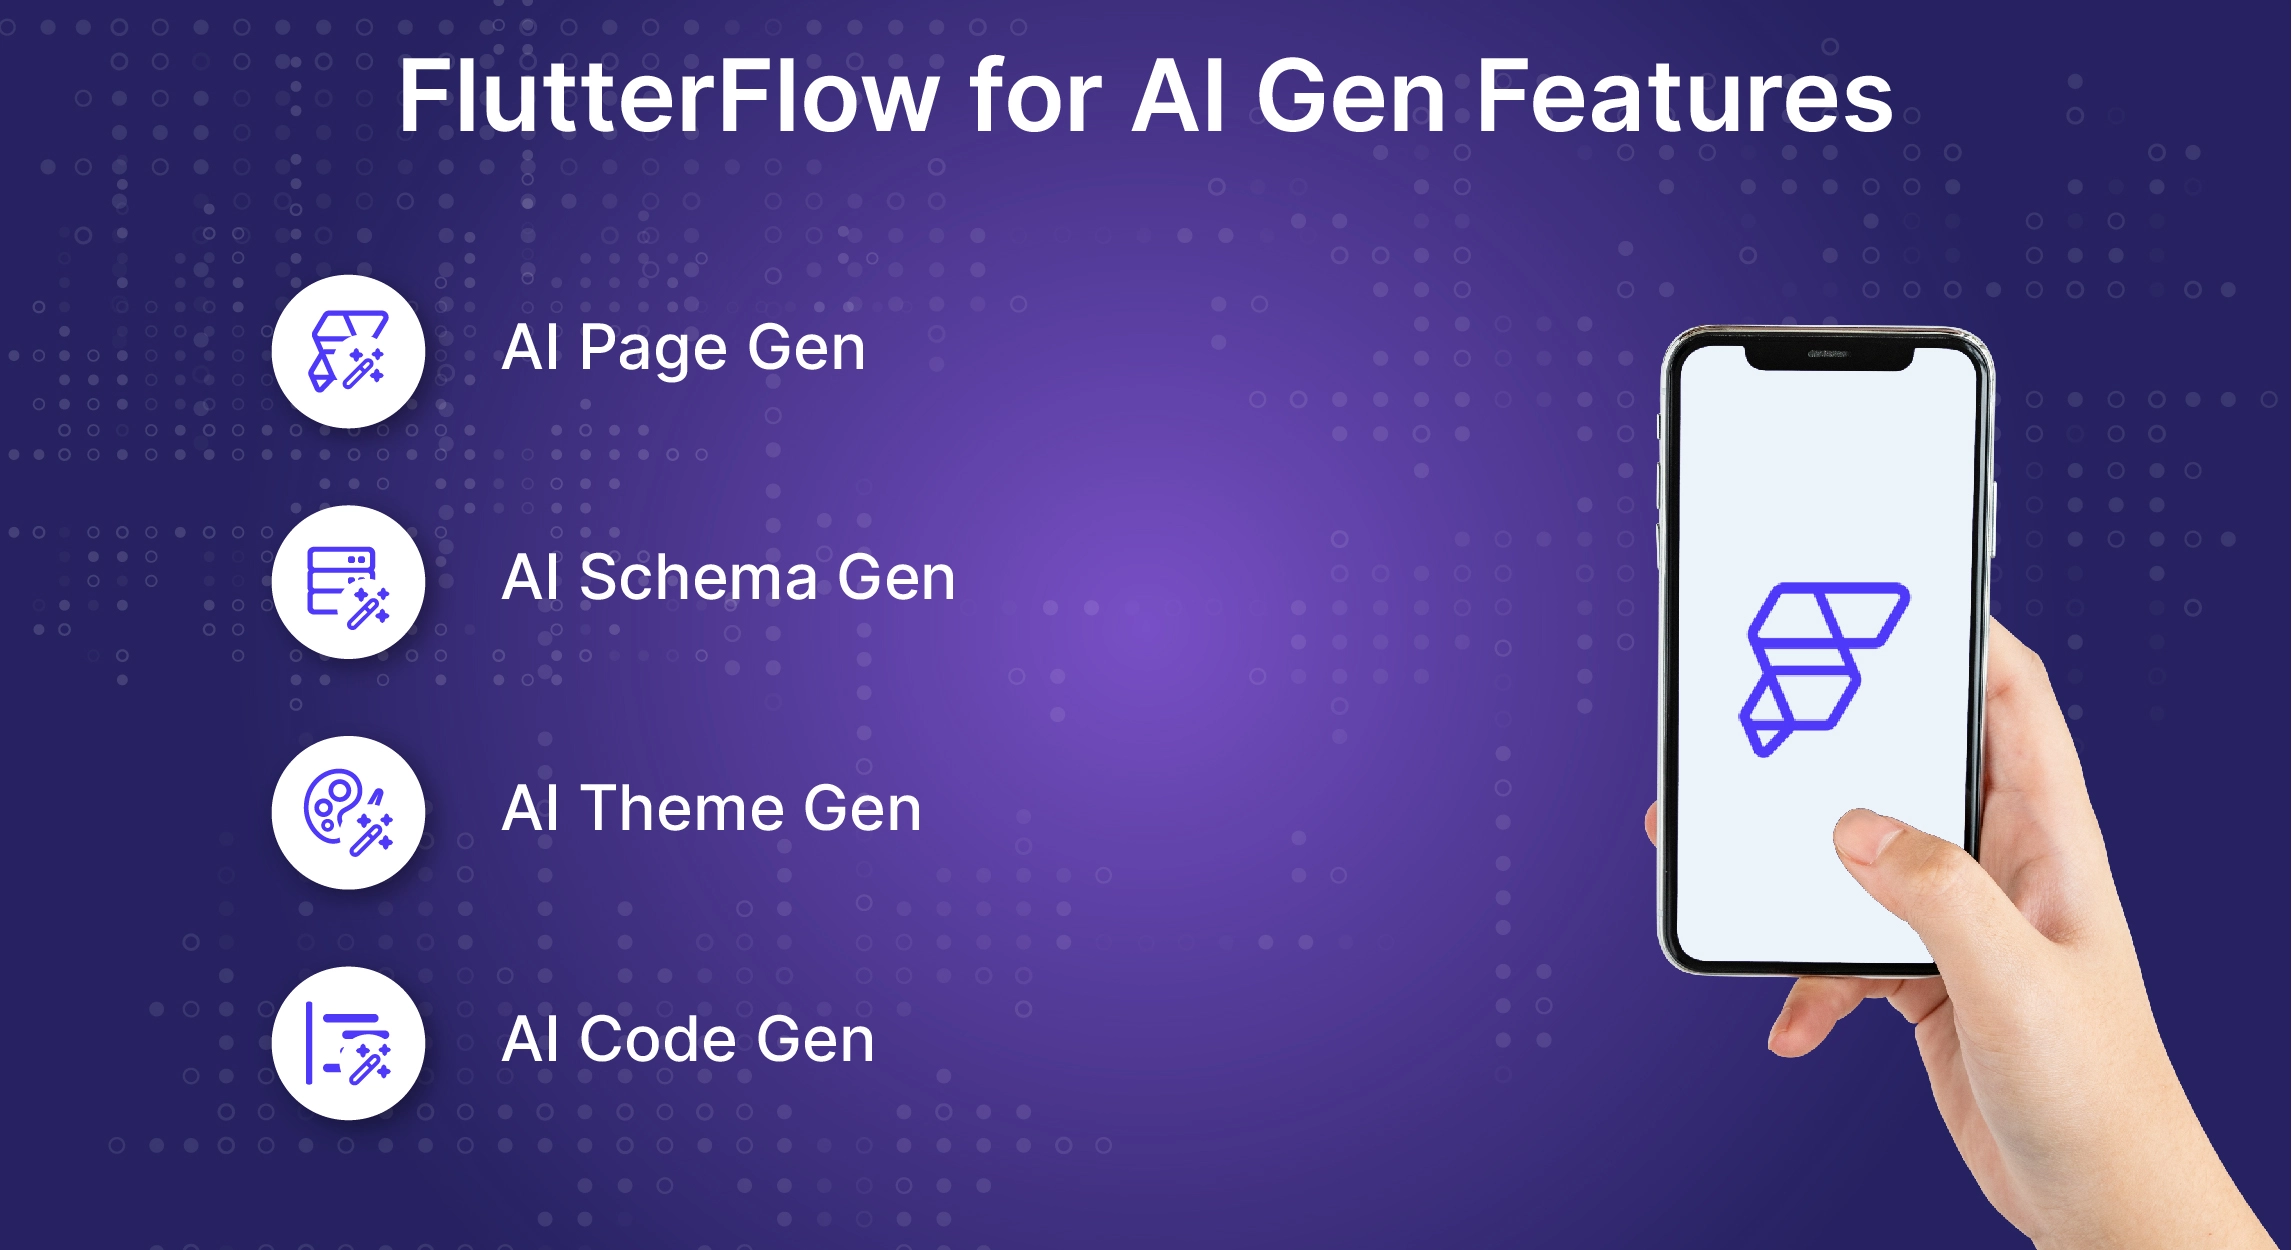 FlutterFlow for AI Gen Features